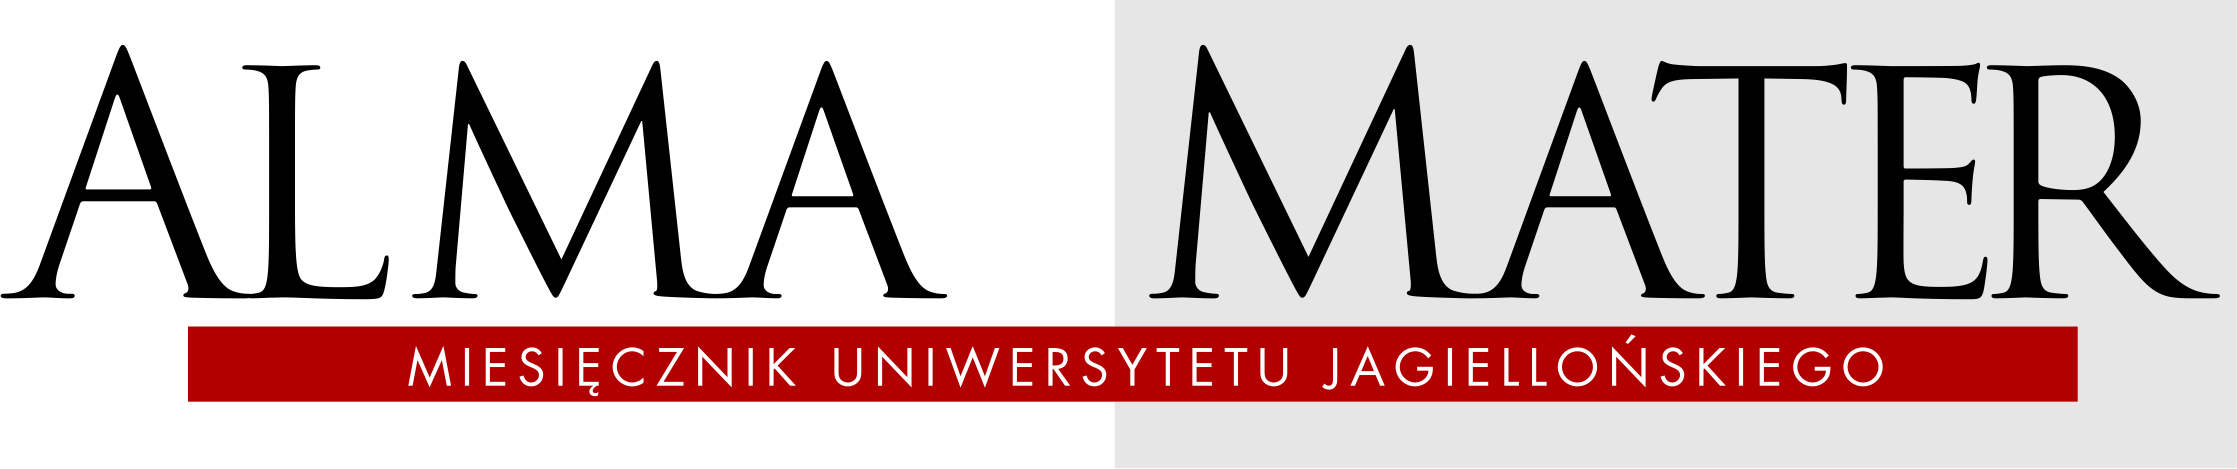 Grafika - logotyp miesięcznika UJ "Alma Mater"